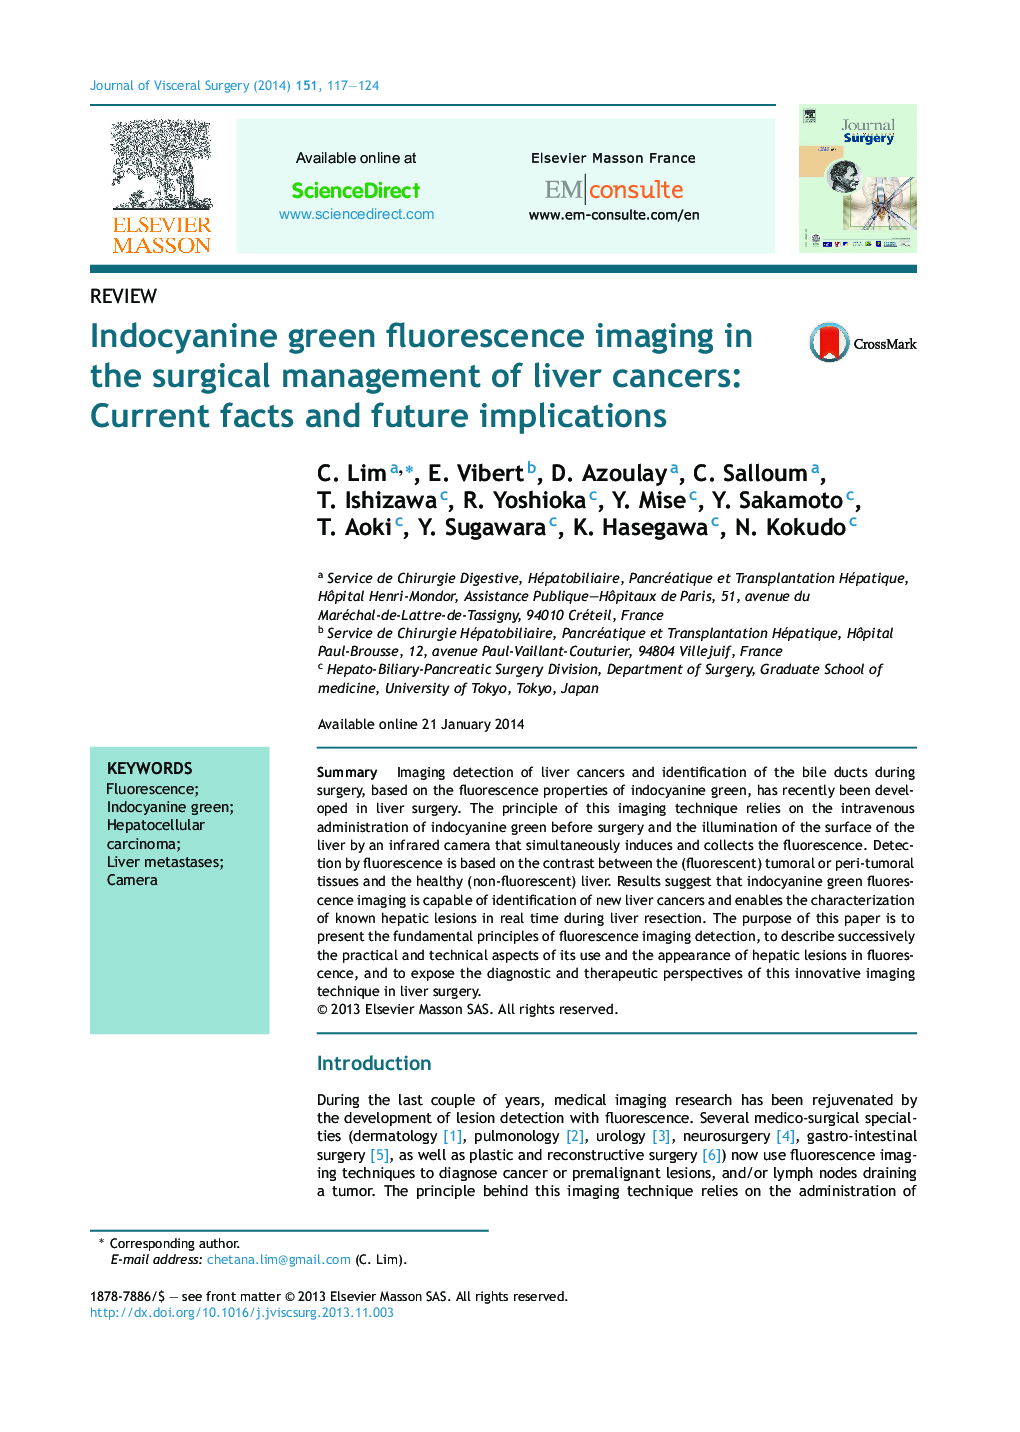 تصویربرداری فلورسنت سبز هندوسیانین در مدیریت جراحی سرطان کبد: واقعیت های جاری و پیامدهای آینده 